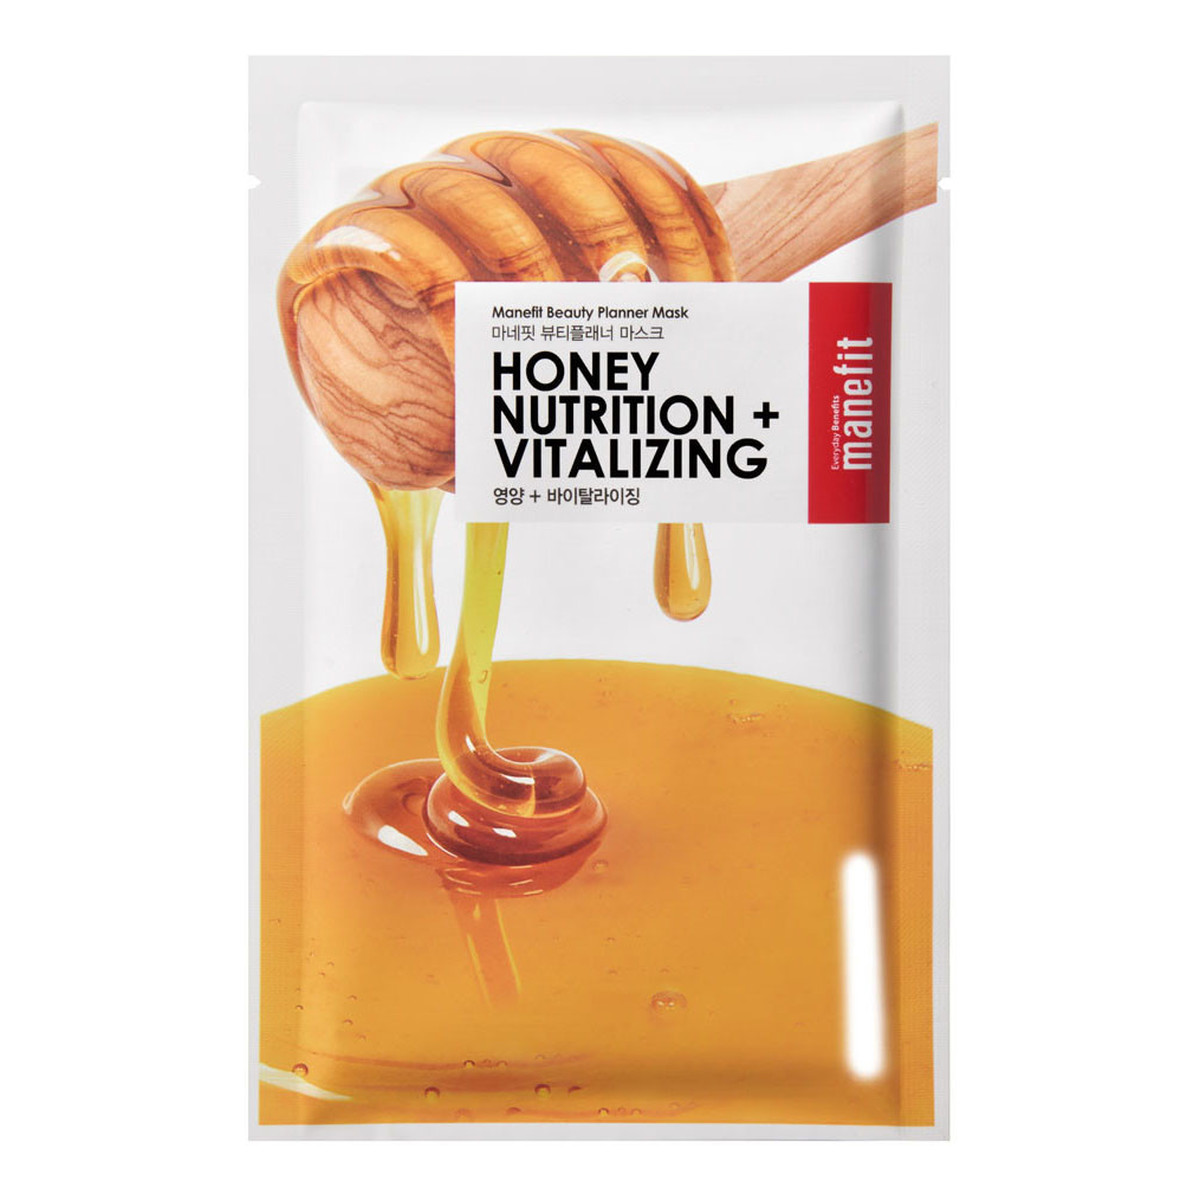 Manefit Honey Nutrition + Vitalizing delikatna maseczka w płachcie dla skóry wrażliwej i suchej 25g